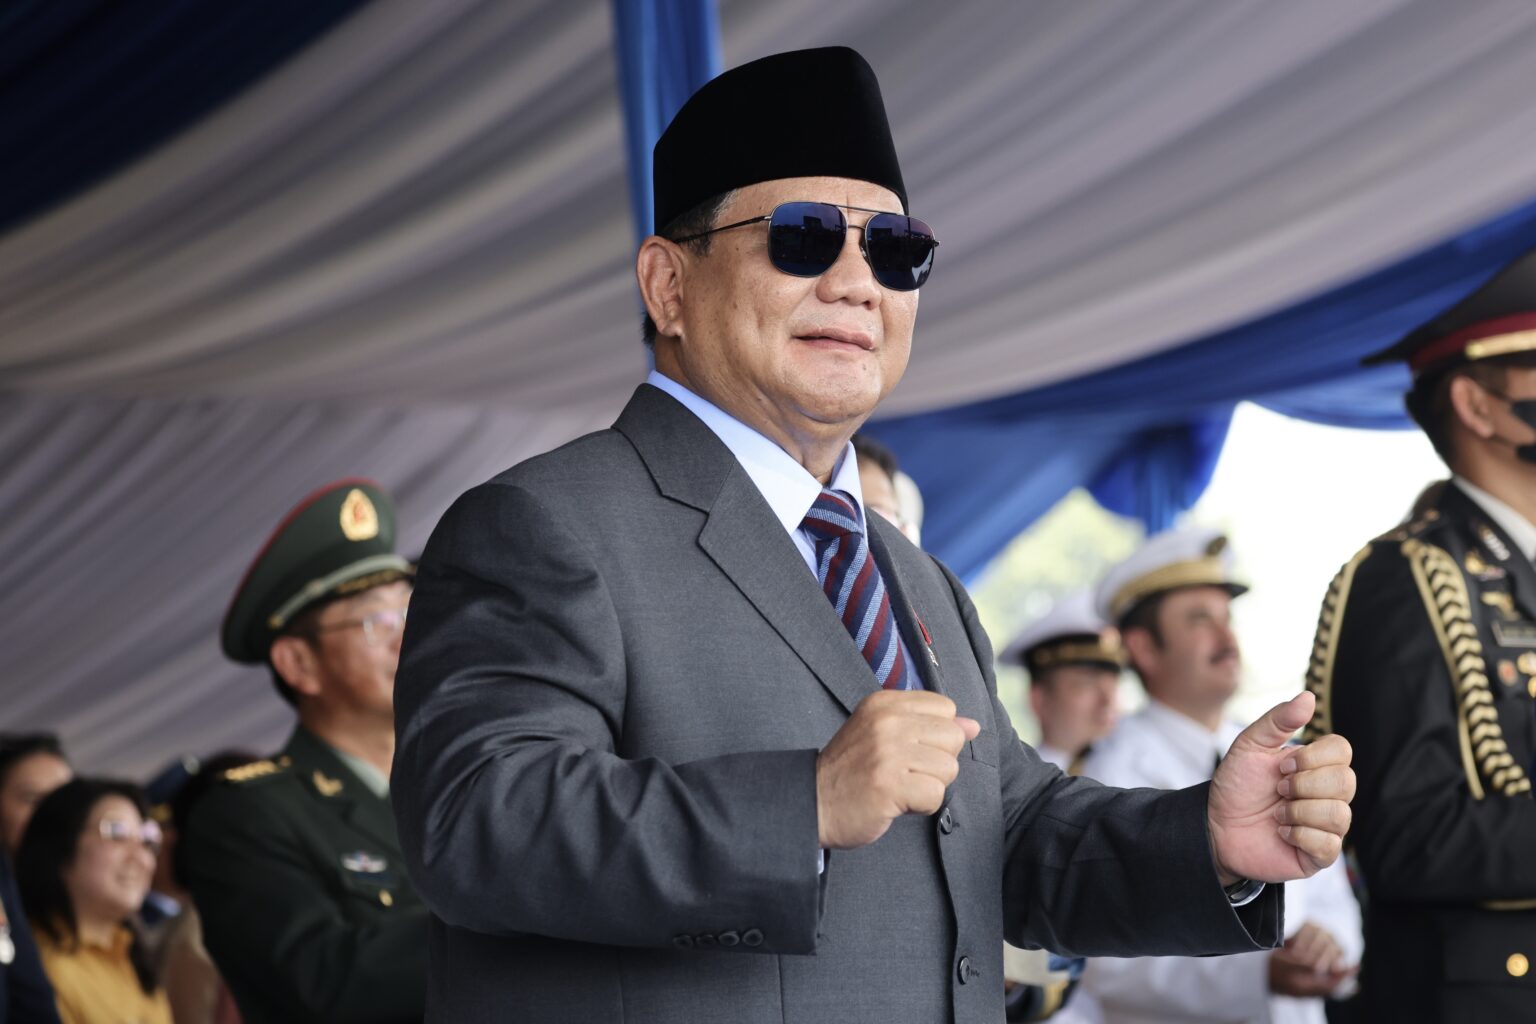 Testimoni tentang dan Harapan untuk Prabowo Subianto